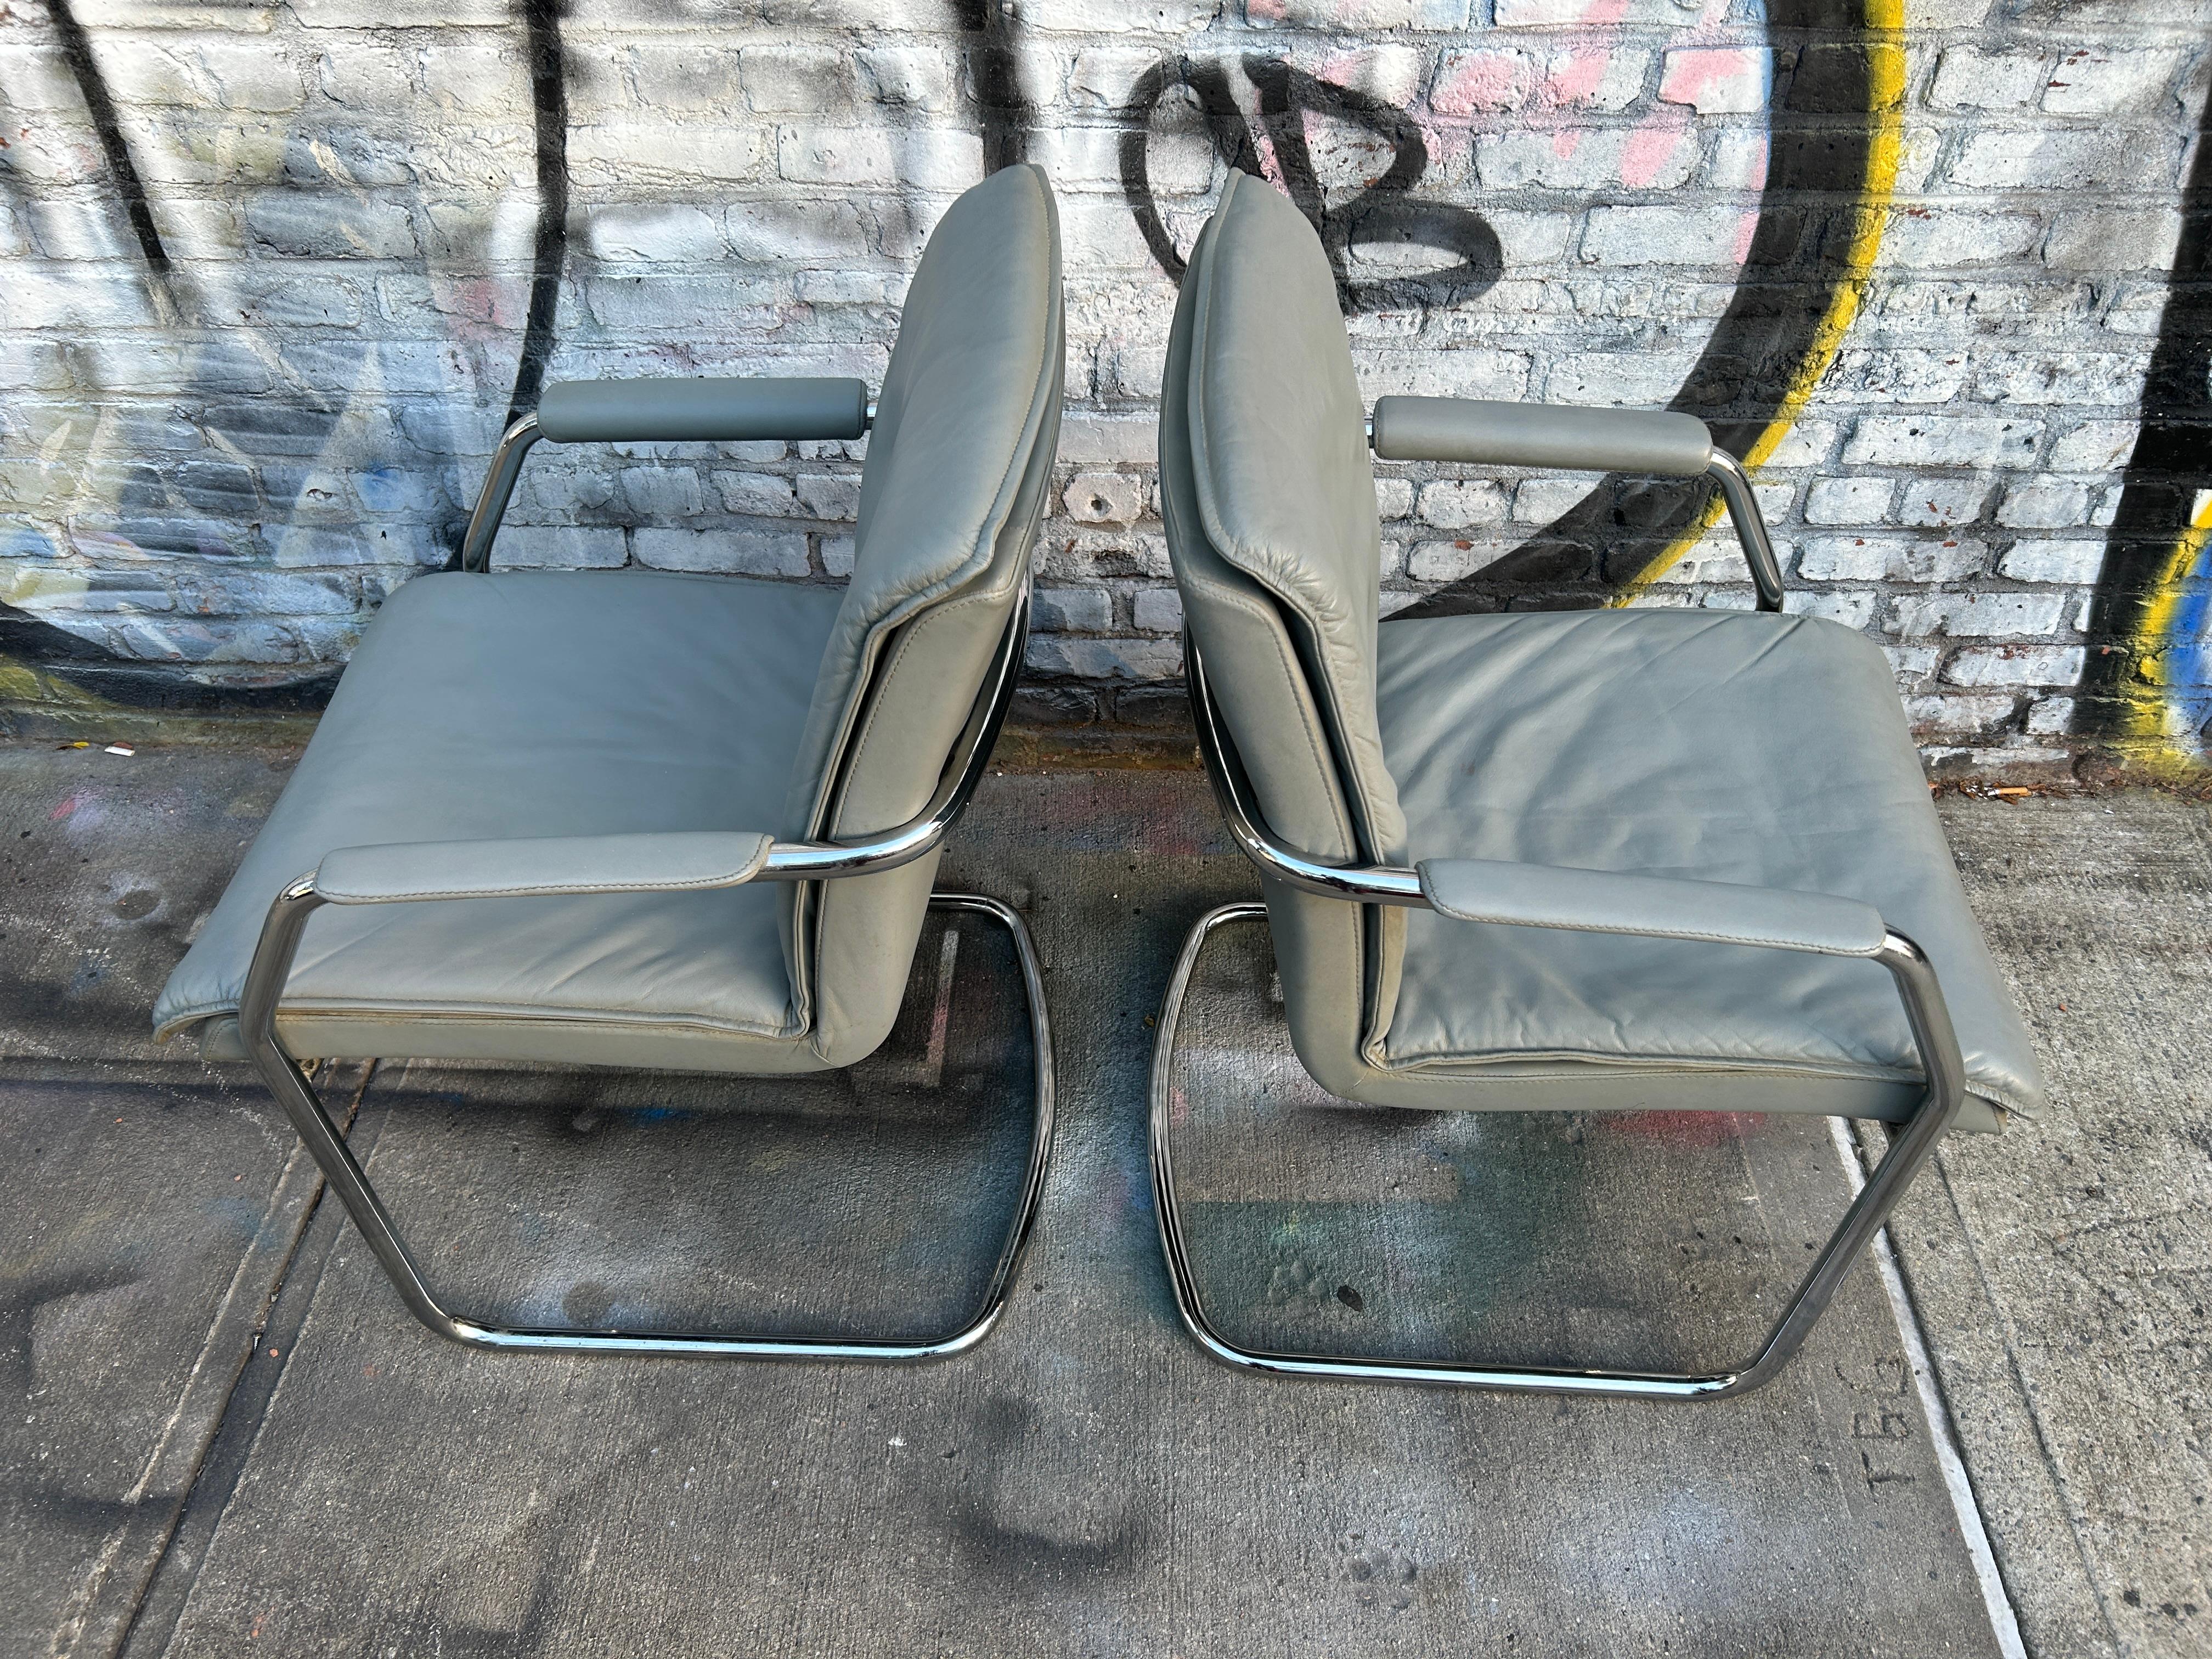 Ein Paar schöne freischwingende graue Leder-Lounge- oder Bürostühle mit verchromten Rohrrahmen von Cy Mann. Original superweiche graue Lederpolsterung. Cy Mann ist vor allem für diesen verchromten Sessel und andere Entwürfe aus den 1970er Jahren